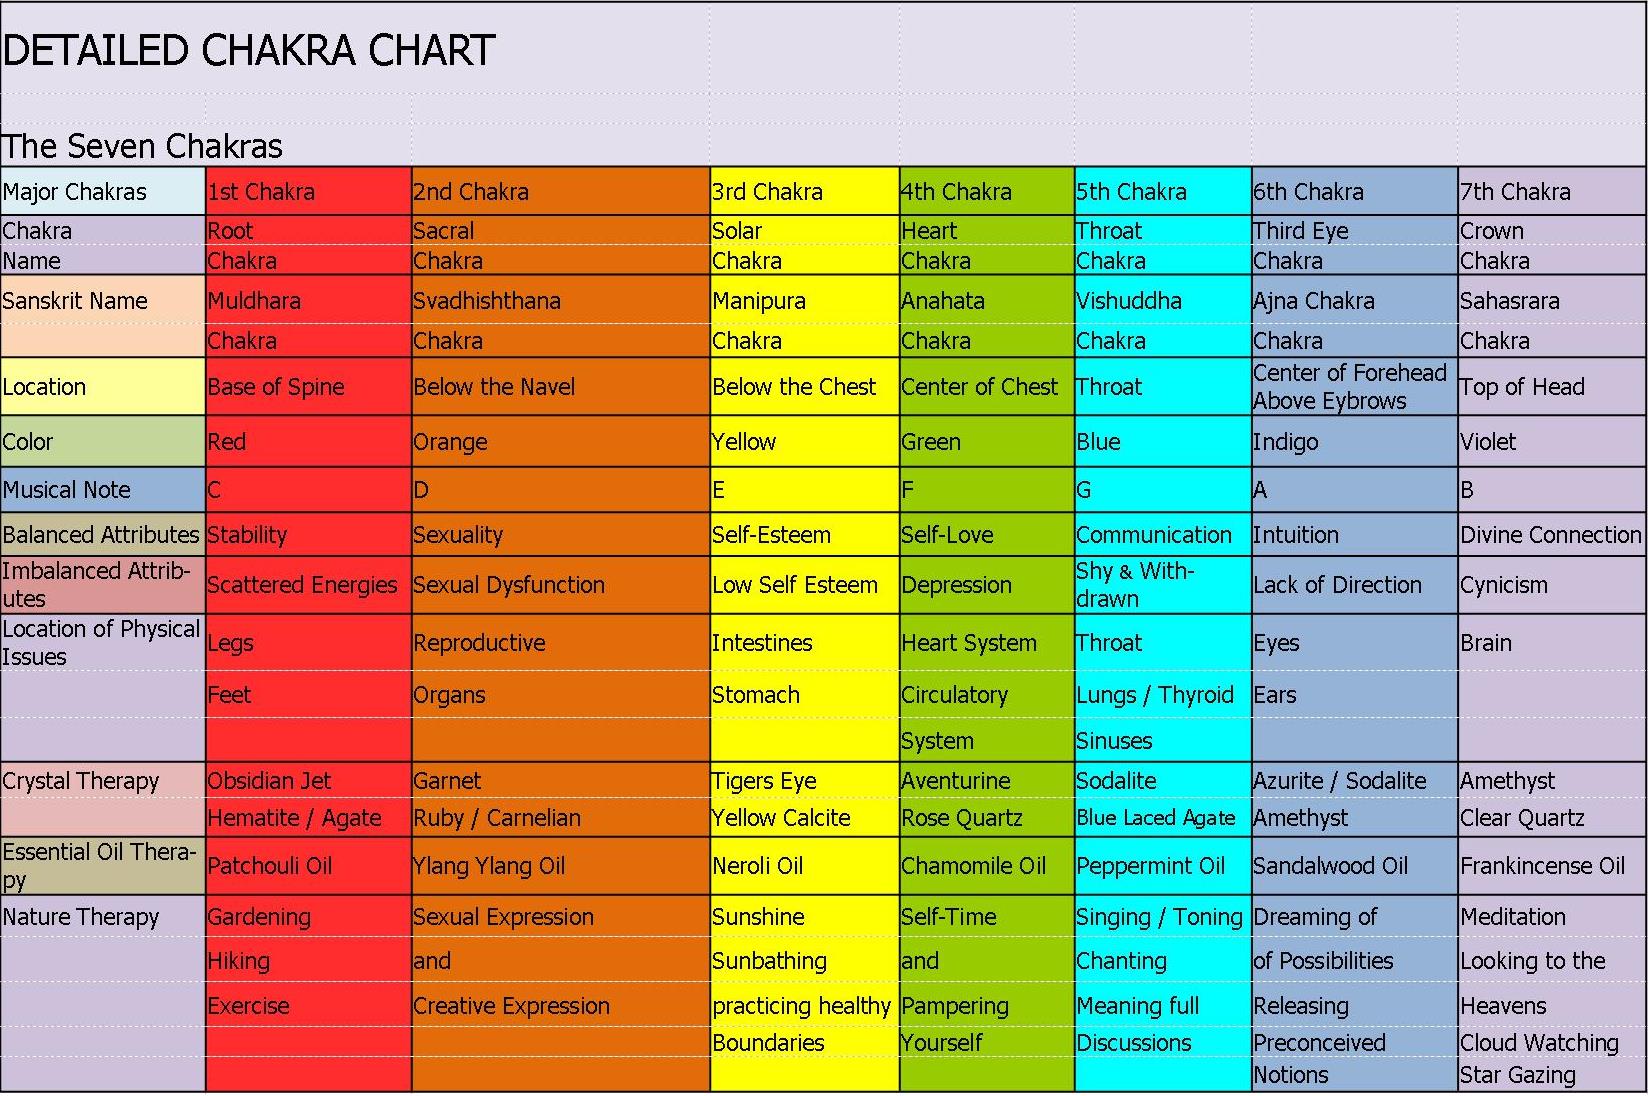 Detailed Chakra Chart